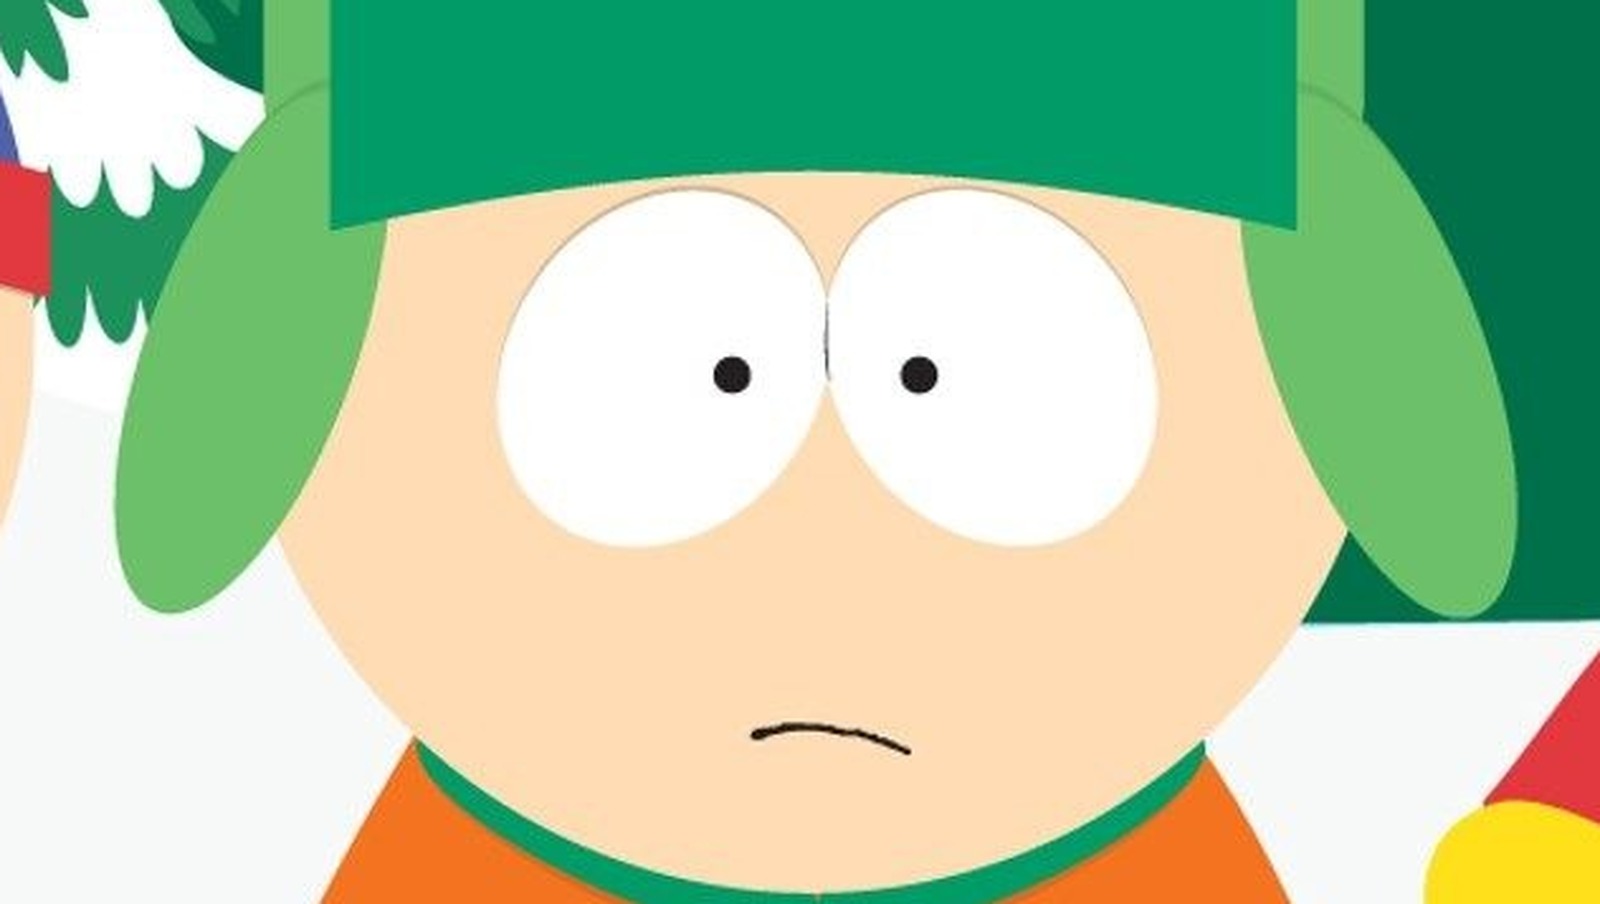 abdul jabbar bagul recommends South Park Season 14 Episode 5